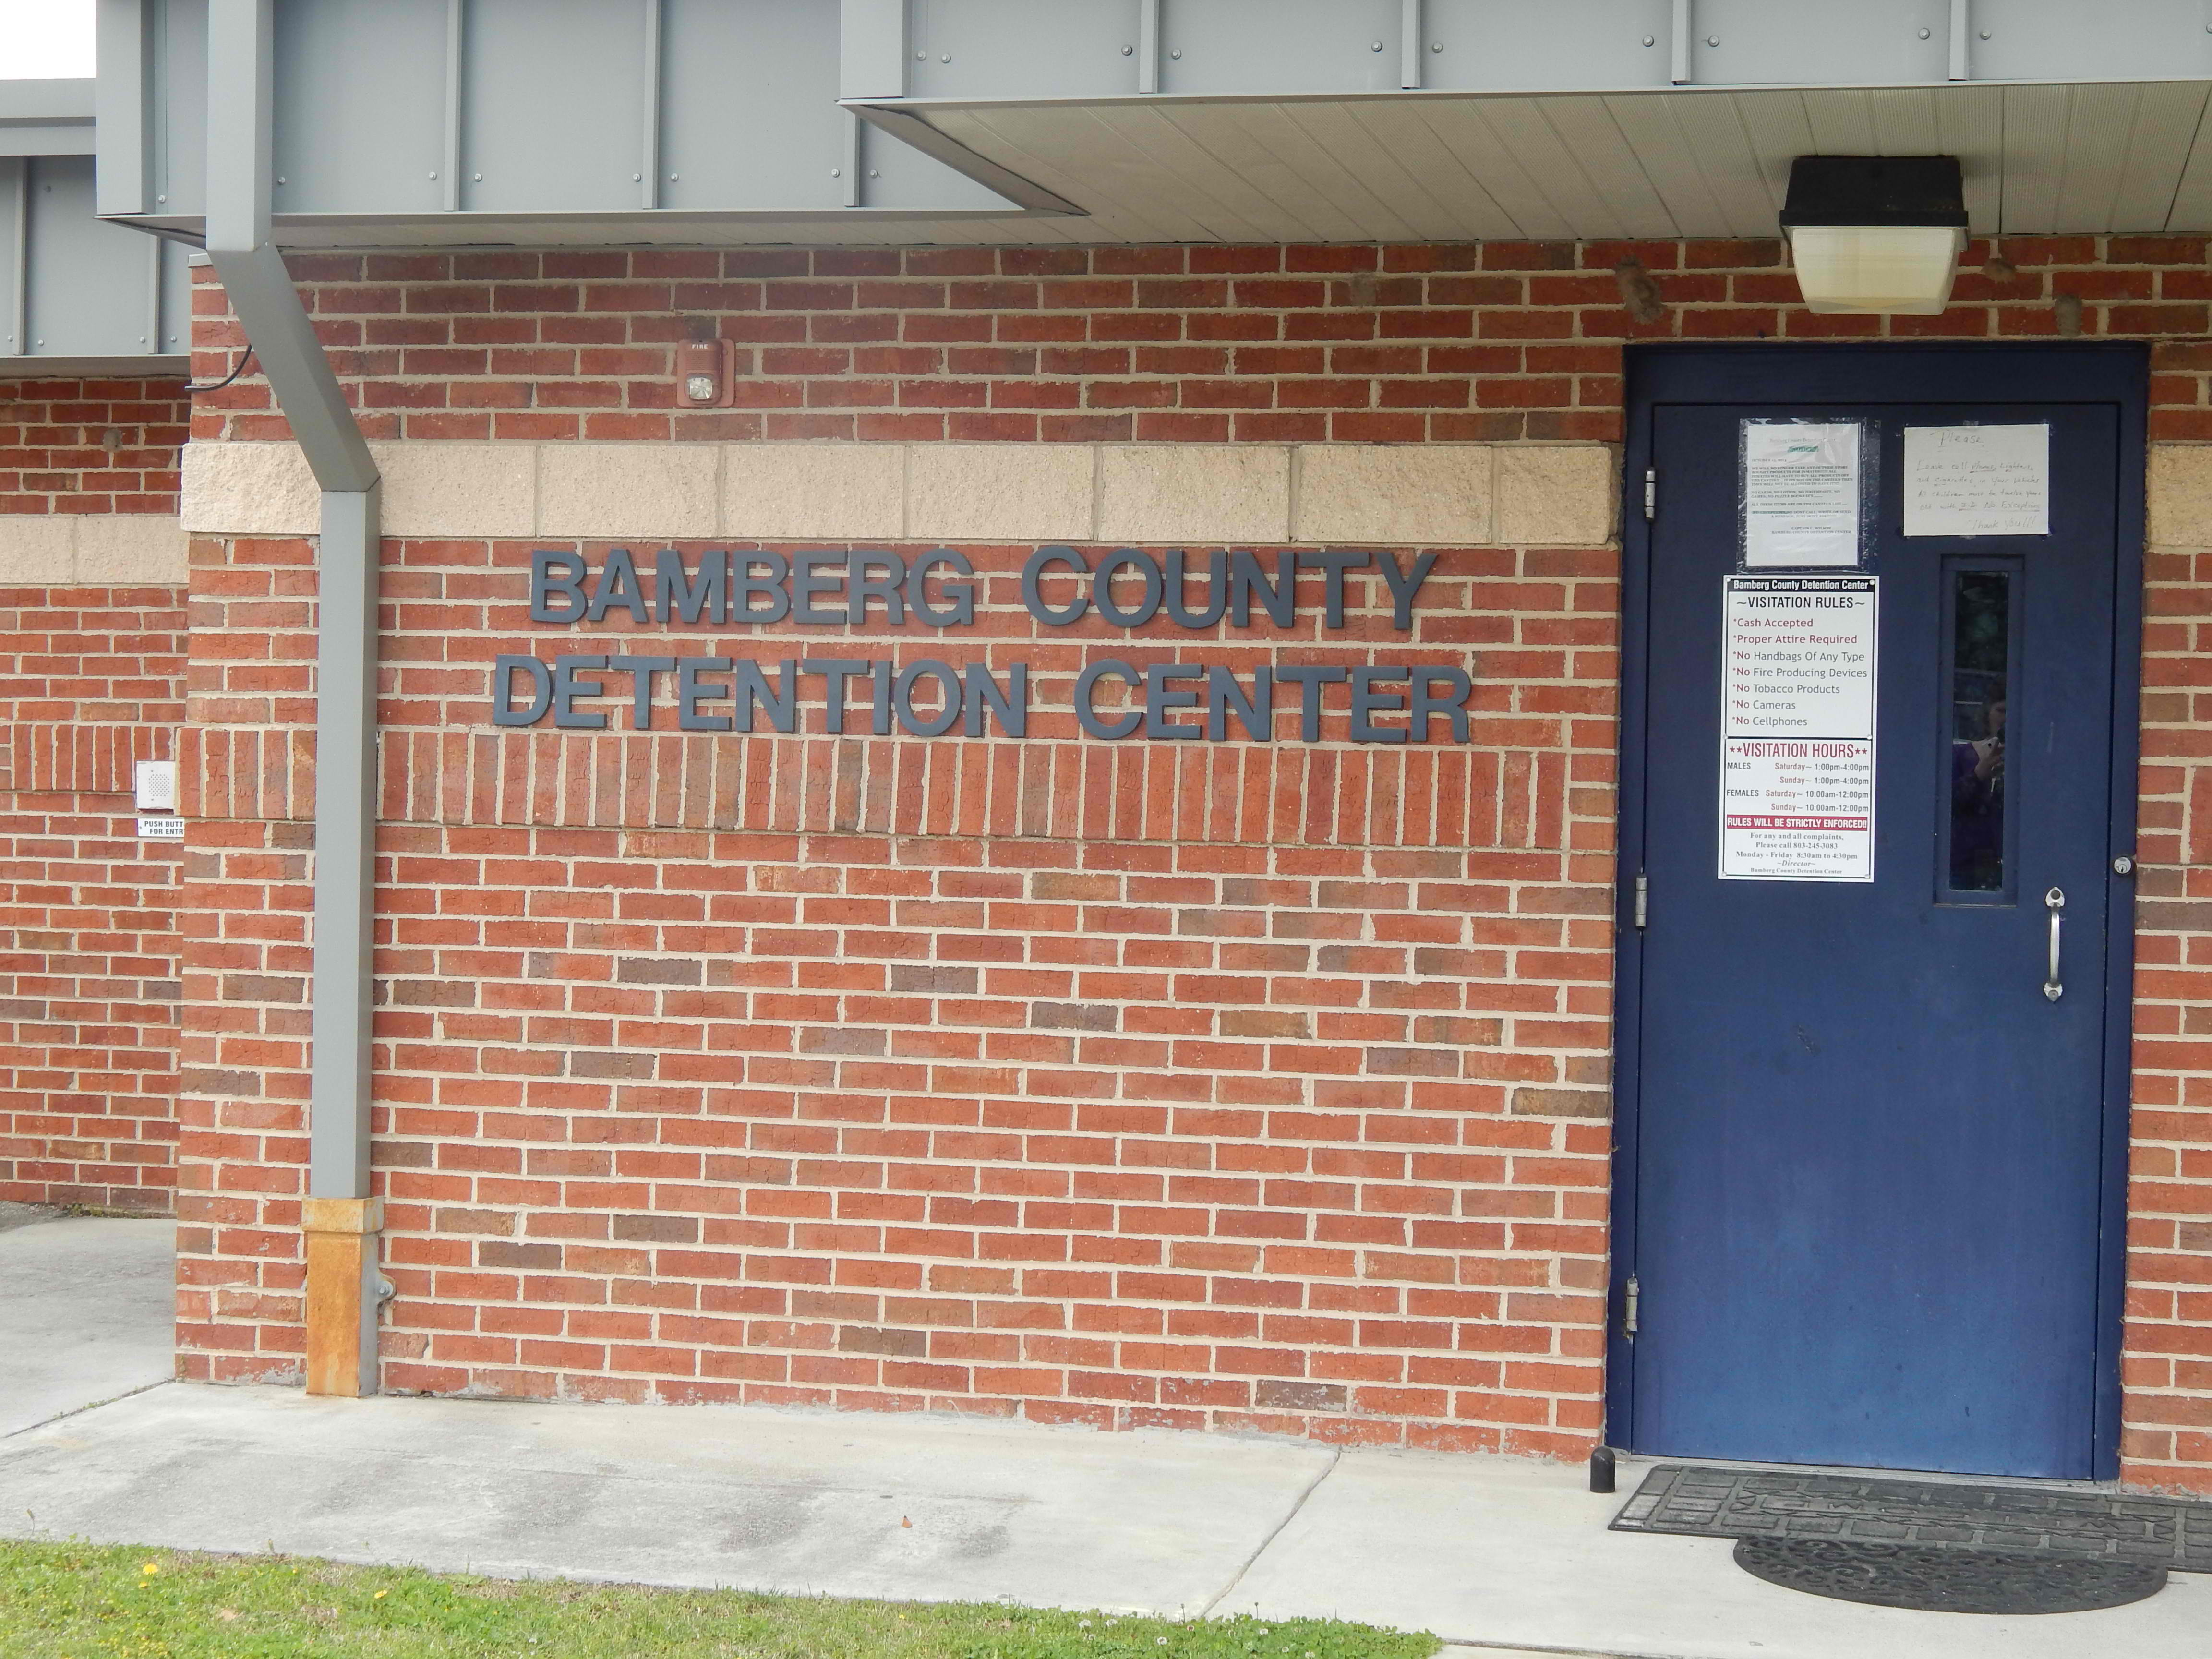 Bamberg County SC Detention Center